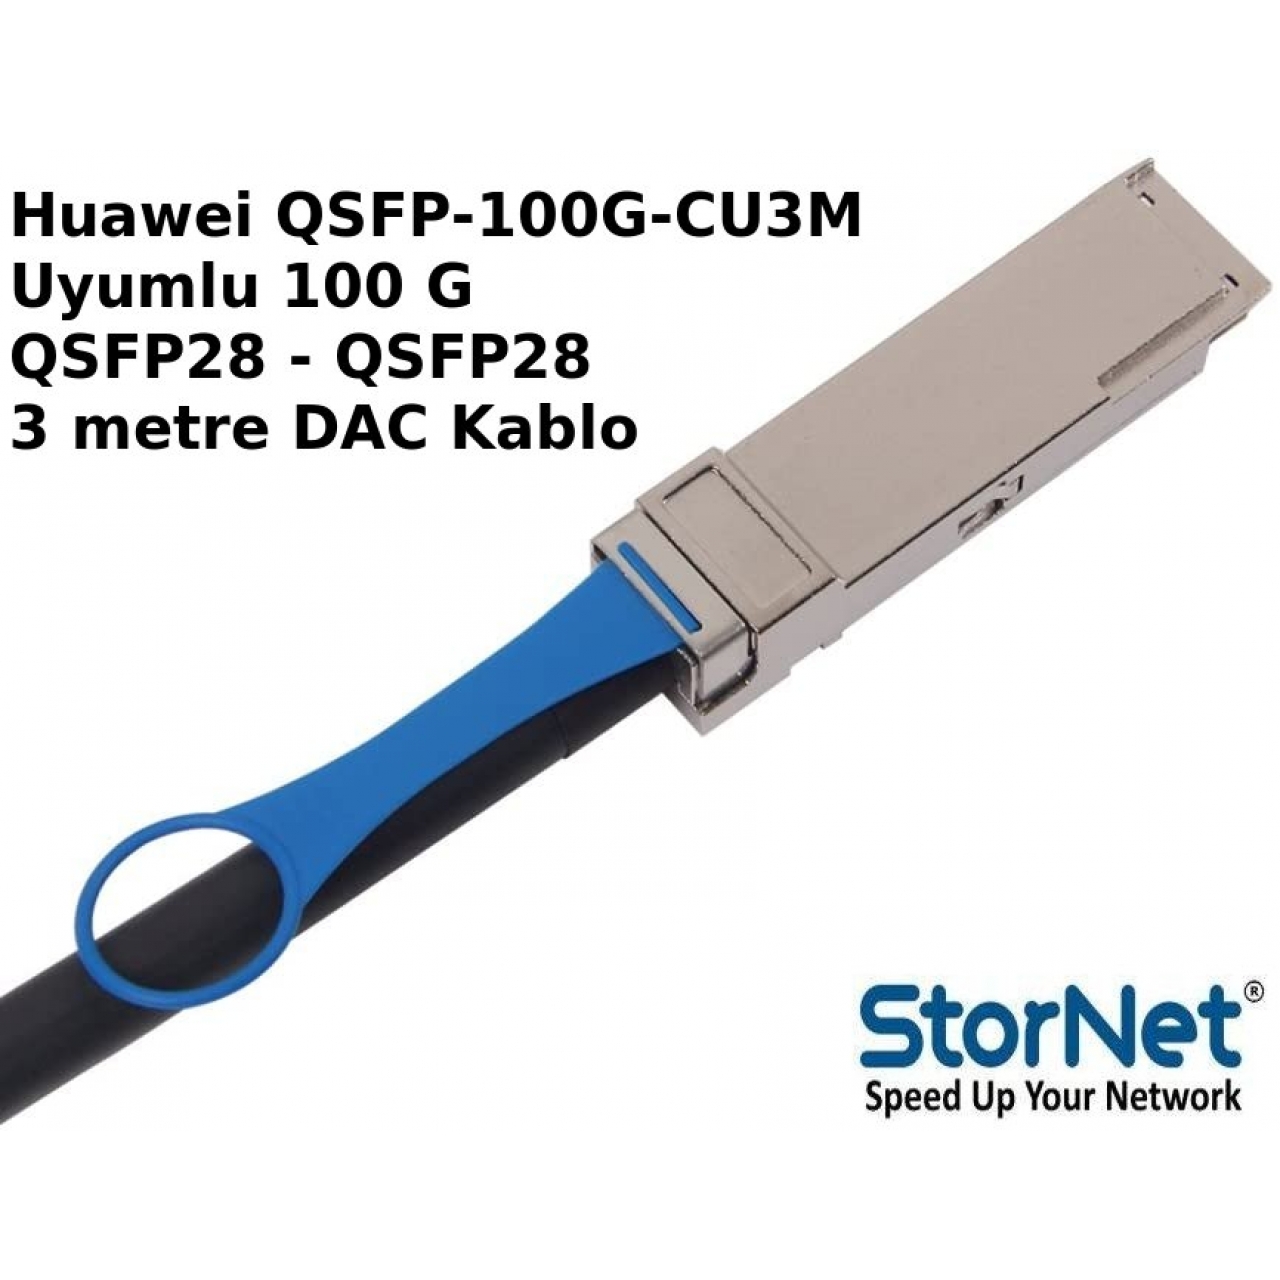 Dac Kablo Huawei QSFP-100G-CU3M 100G QSFP28-QSFP28 3 metre uyumlu